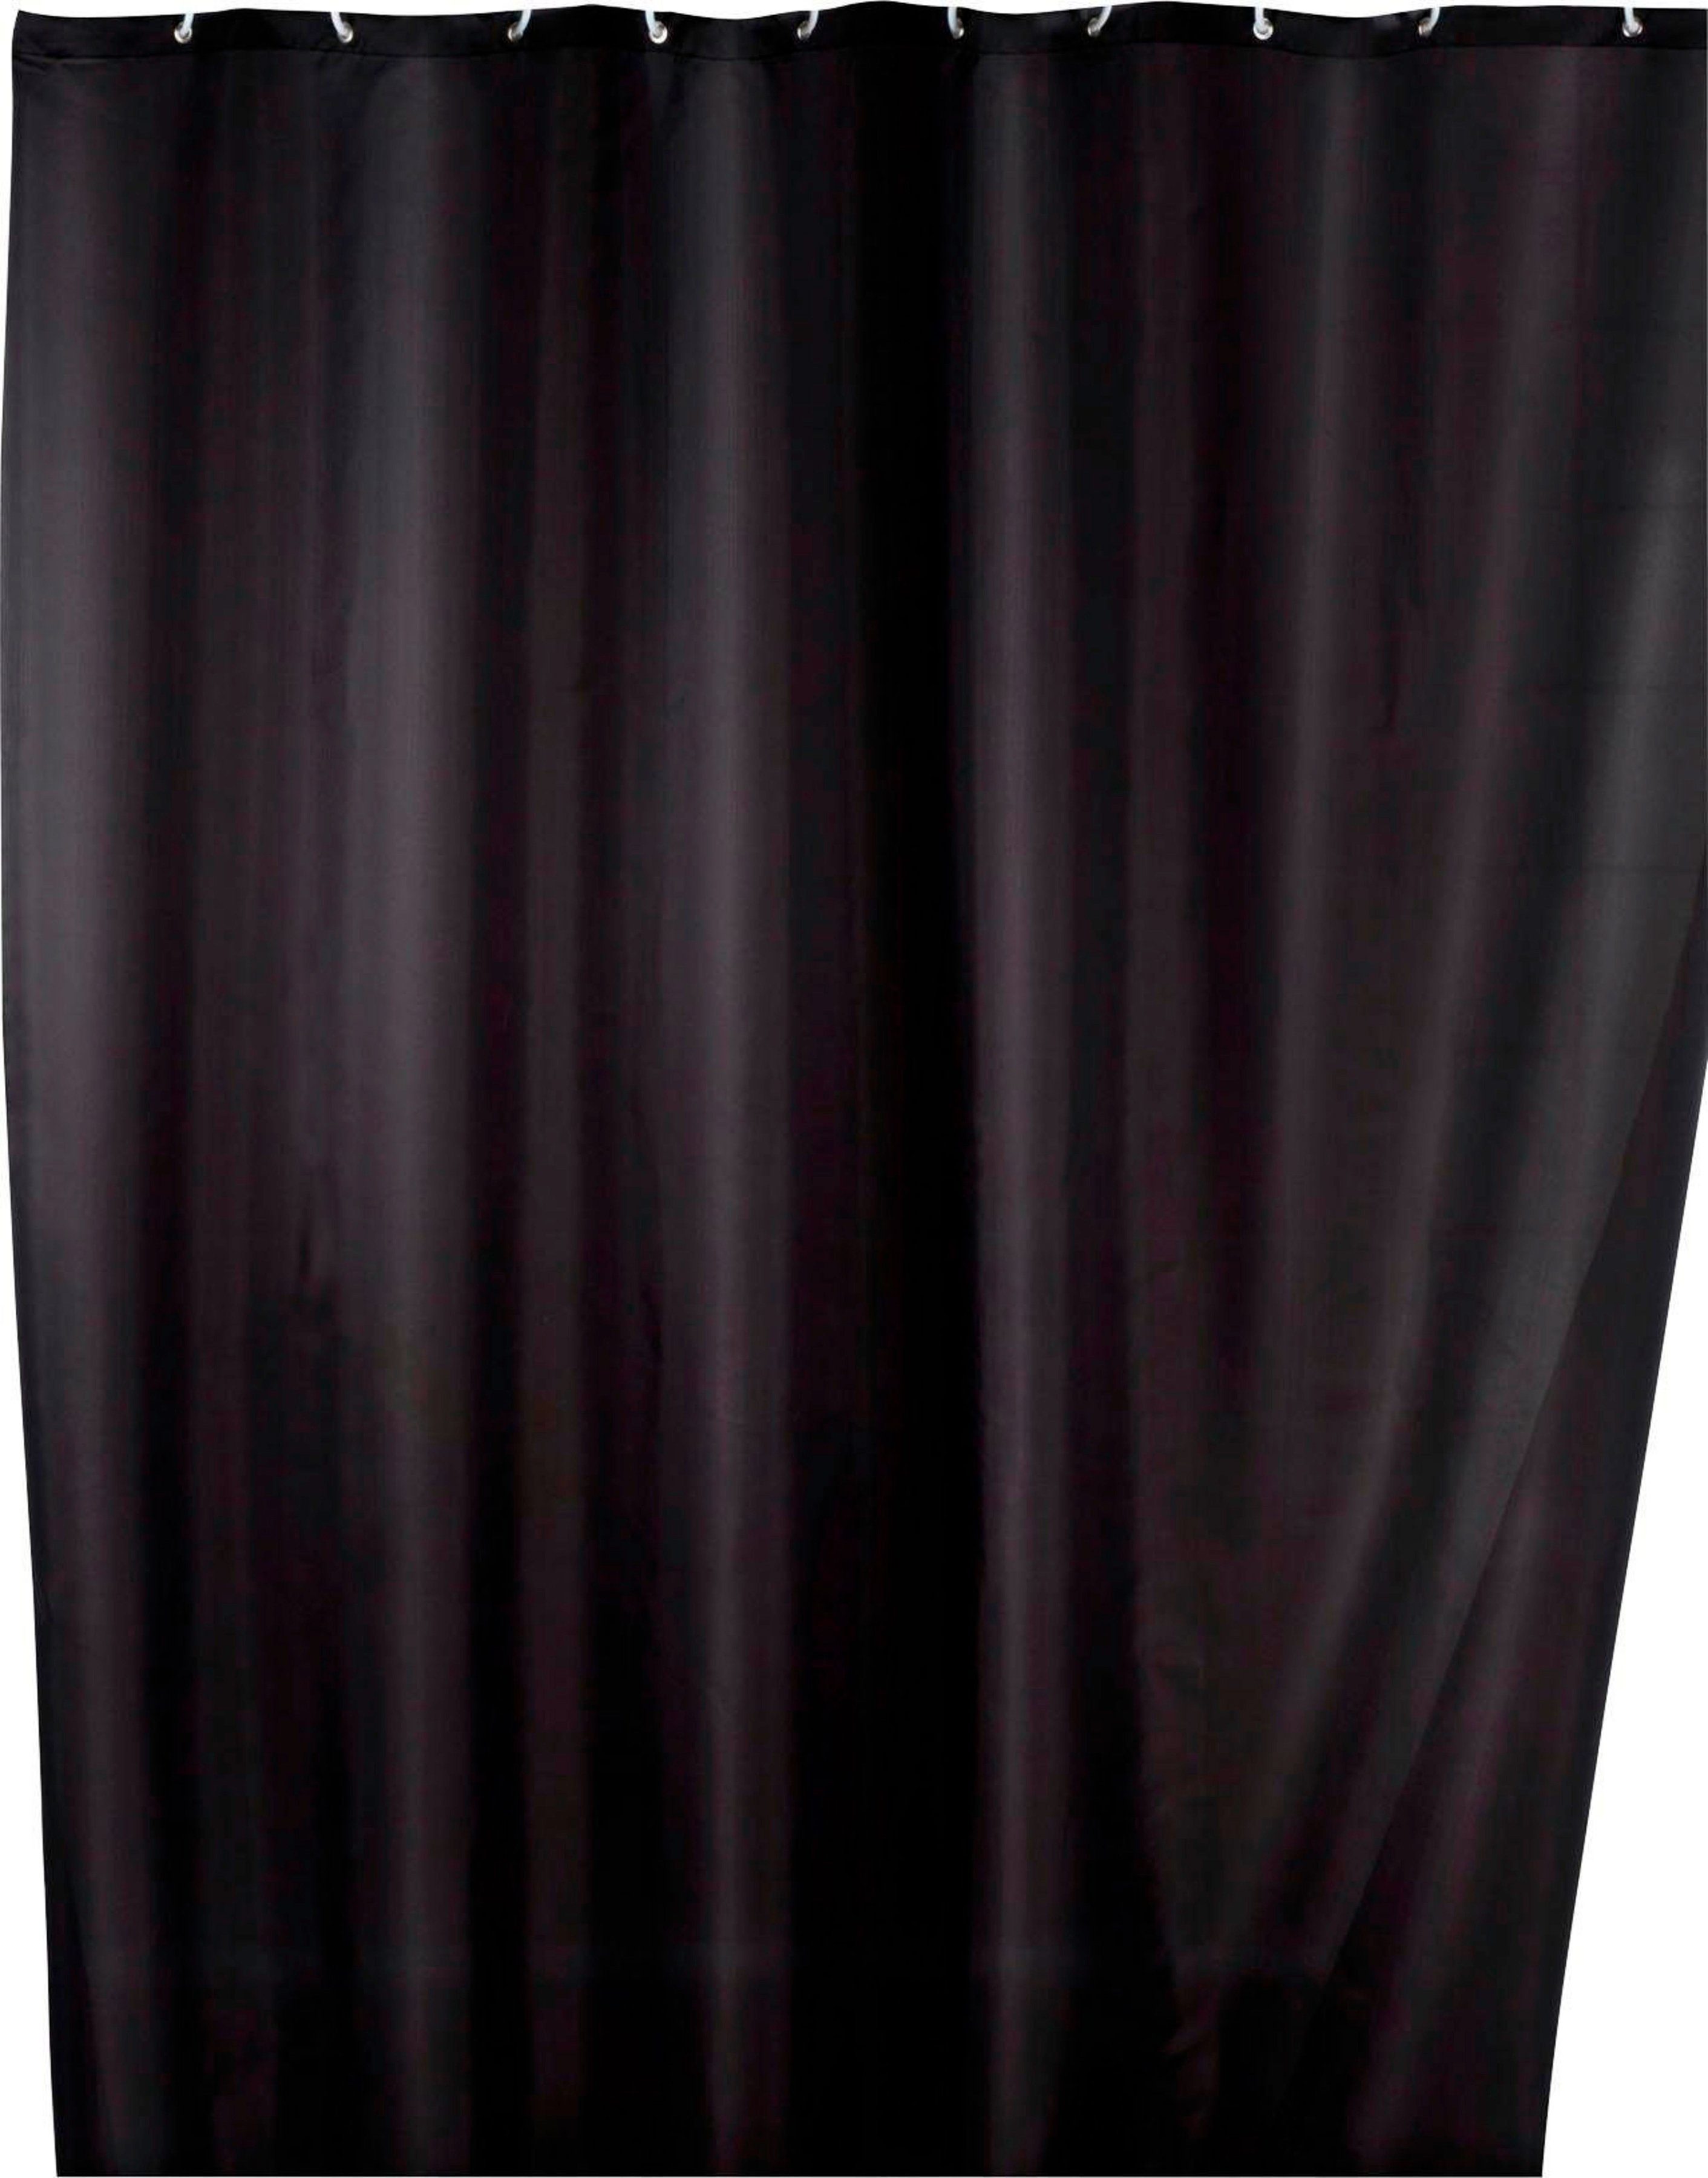 WENKO Duschvorhang Uni Black Breite 180 cm, Höhe 200 cm, Polyester, waschbar